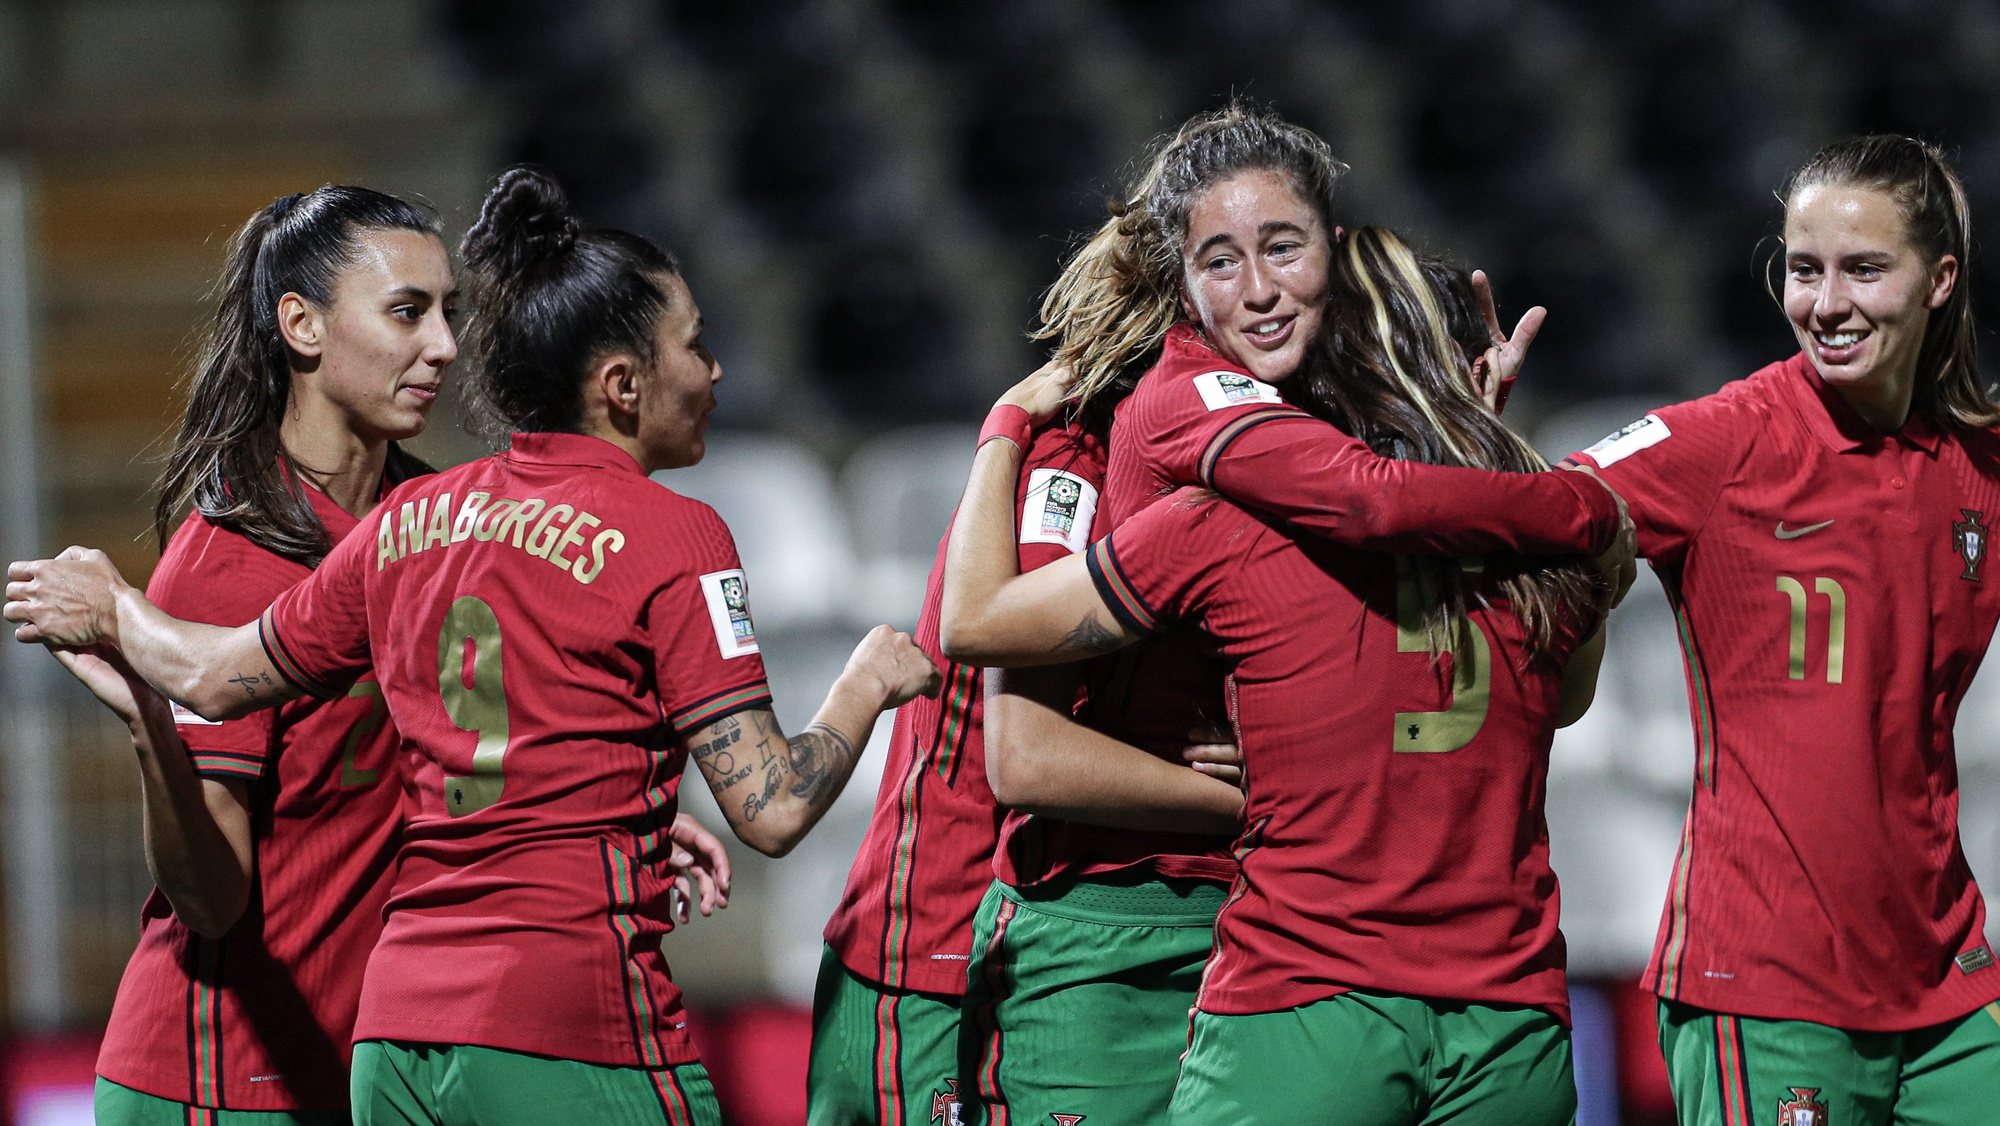 A jogadora de Portugal, Carolina Mendes (3-D), festeja após marcar um golo contra Israel durante o jogo de futebol do grupo H da Fase de qualificação para o Mundial feminino 2023, disputado no Estádio Municipal de Portimão, 25 de novembro de 2021. LUÍS FORRA/LUSA